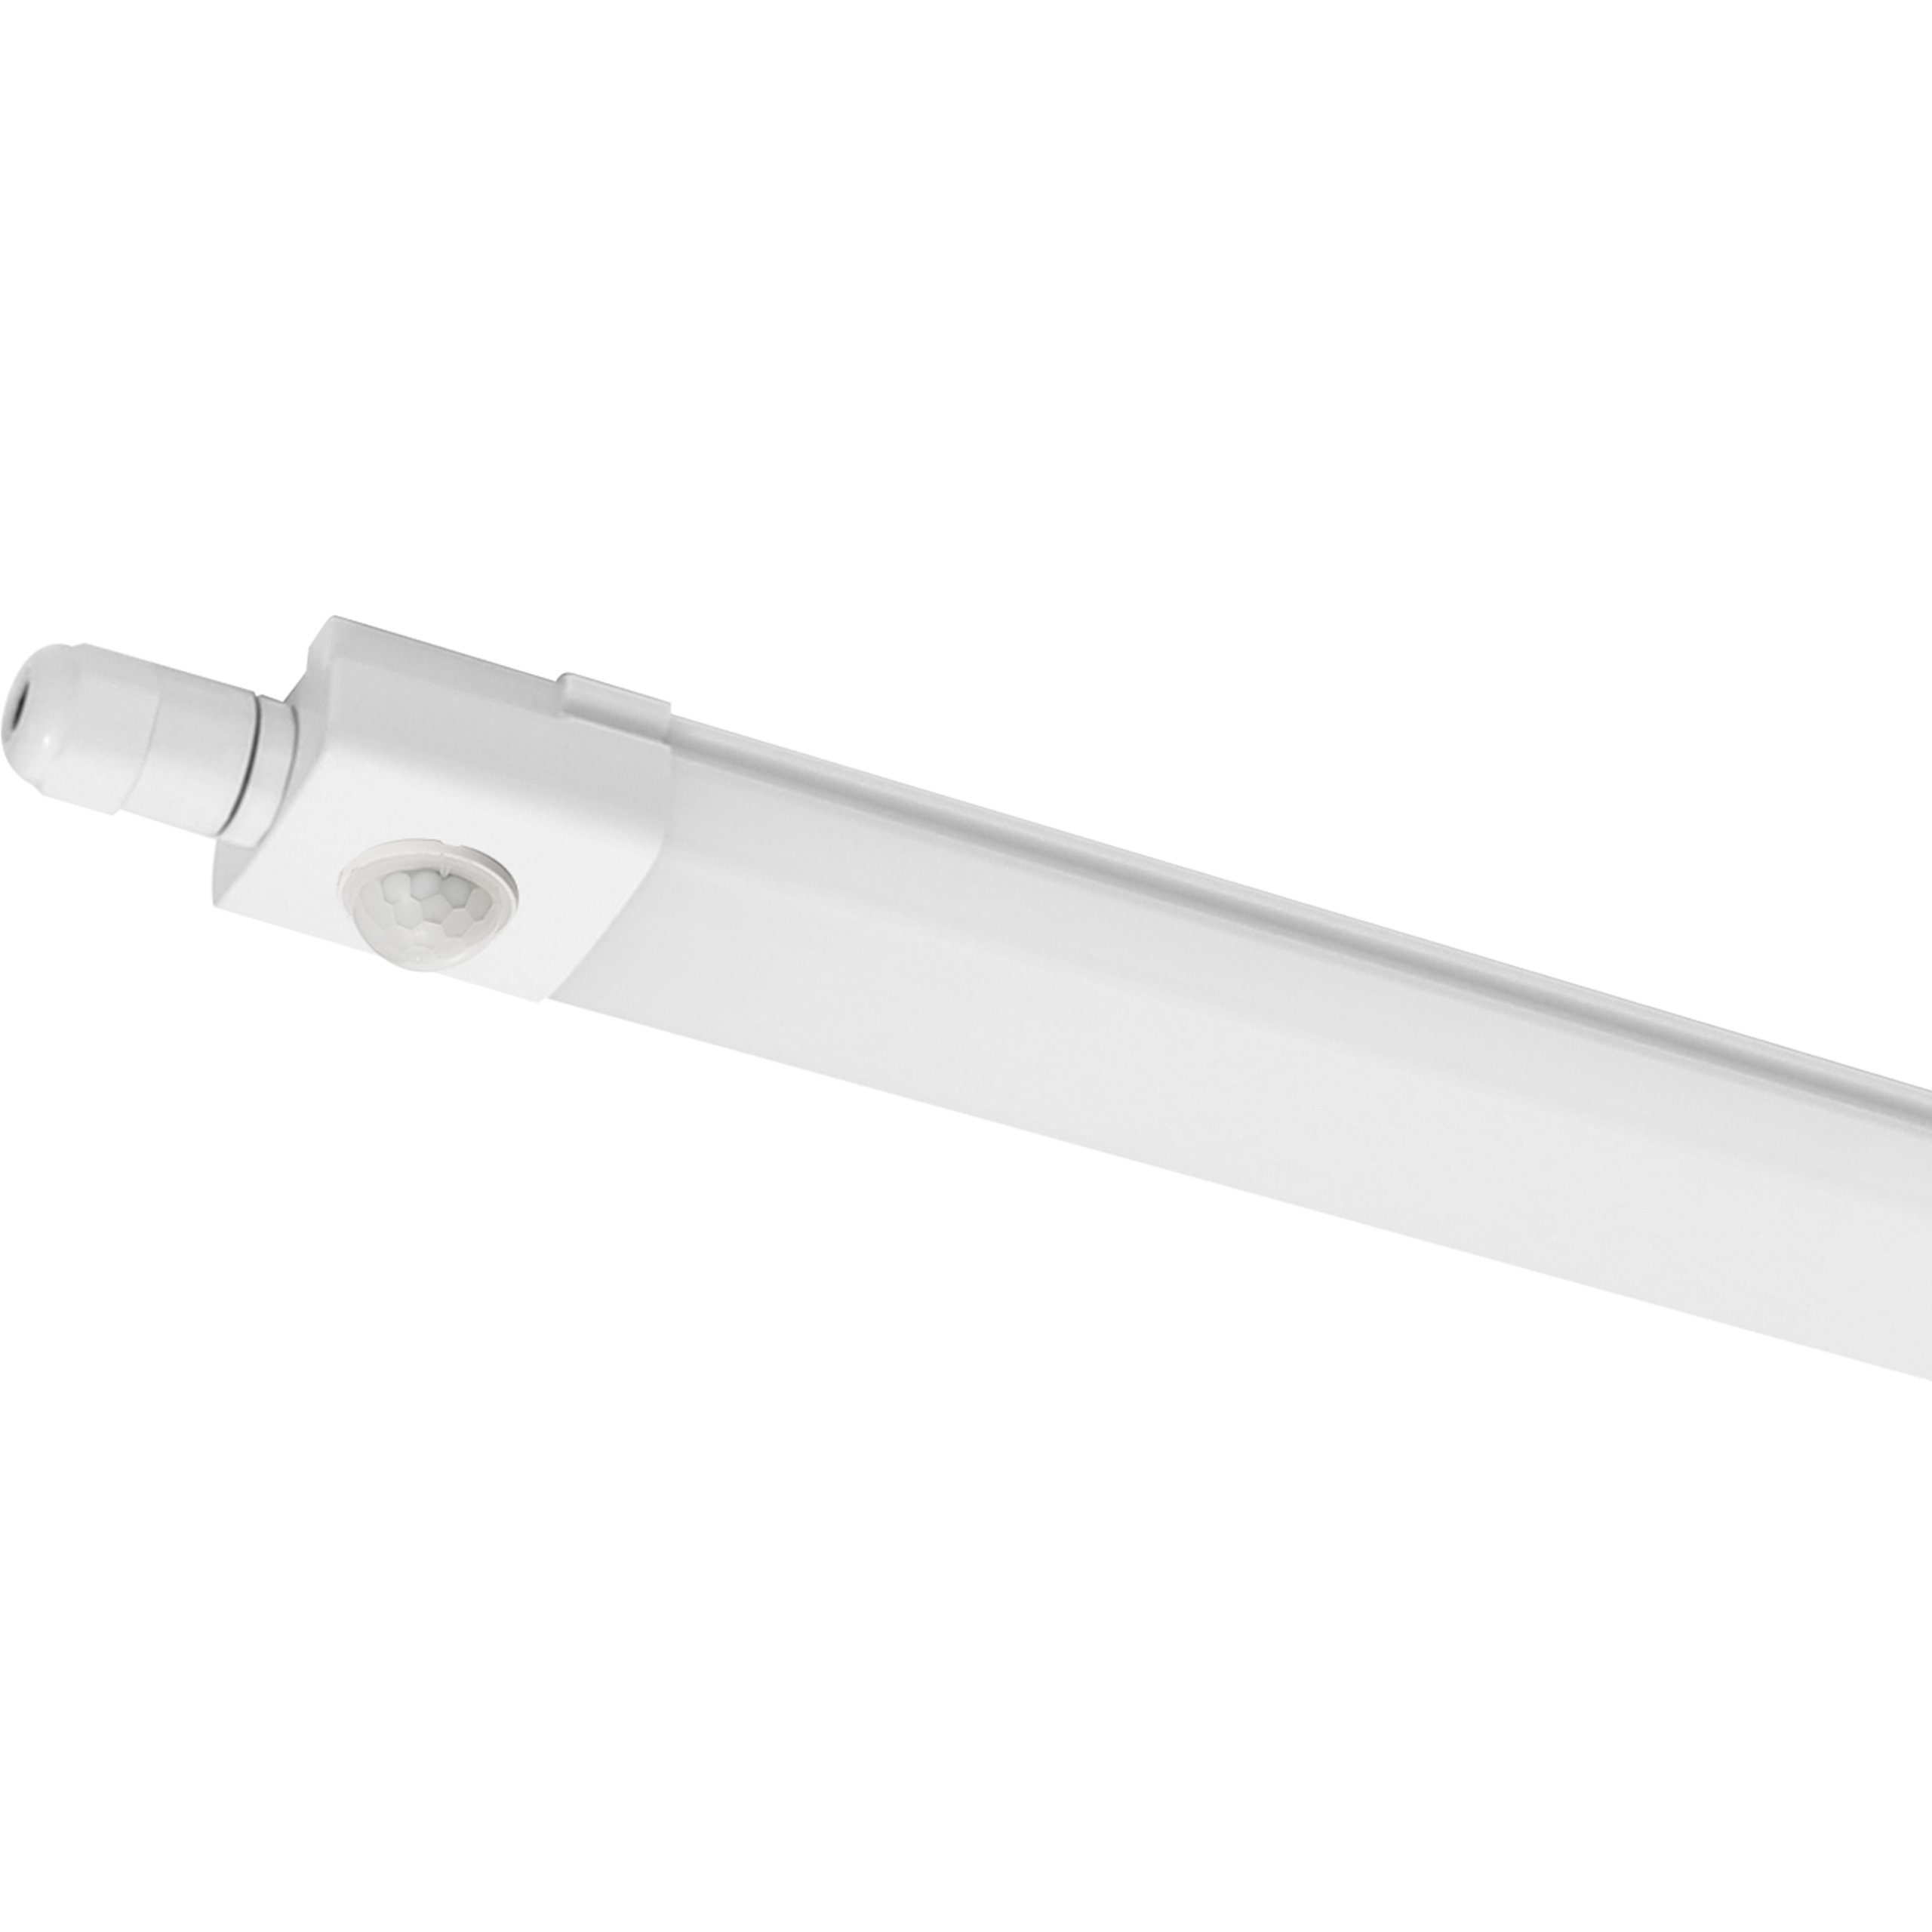 LED's light LED Deckenleuchte 2400493 LED-Feuchtraumleuchte, LED, mit PIR-Bewegungsmelder 120 cm 30 Watt neutralweiß IP65